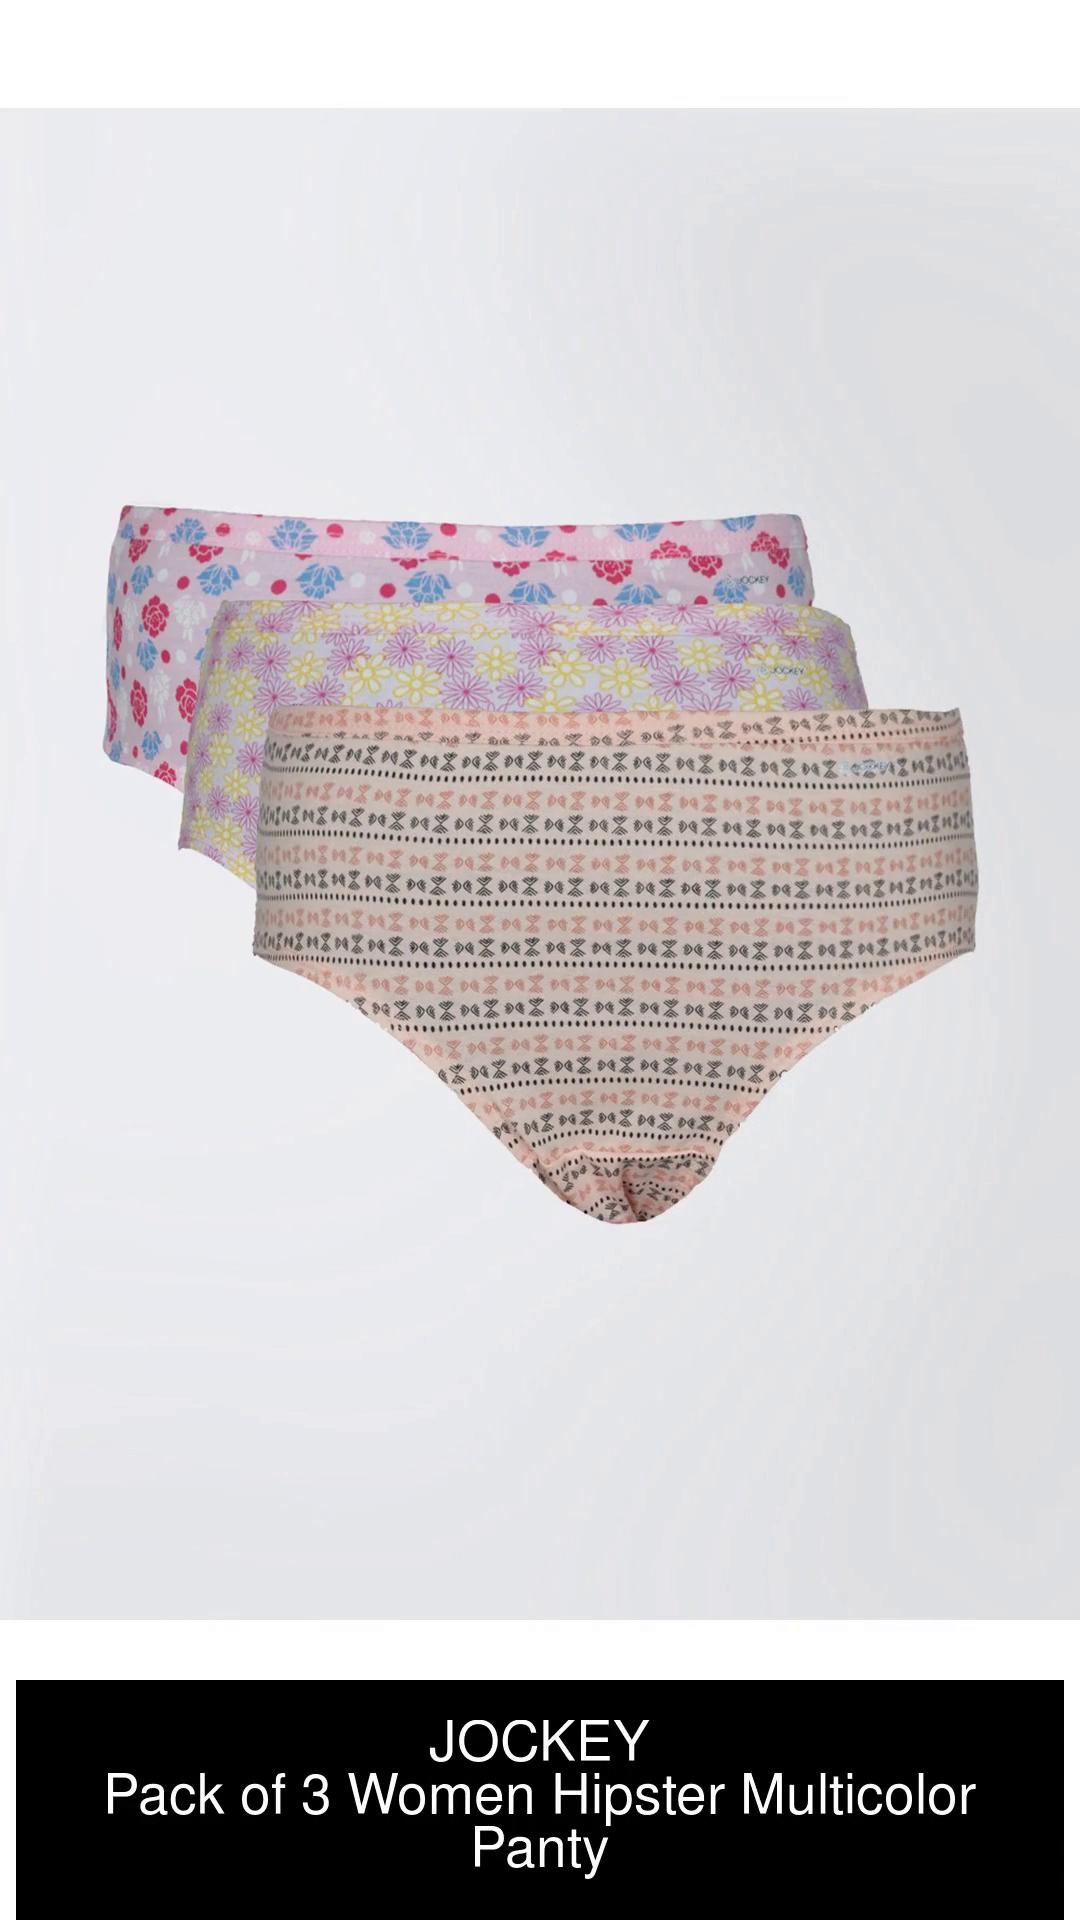 Buy Jockey Ladies 5 Pieces Pack Assorted Colour Solid Panties Medium Online  - Lulu Hypermarket India